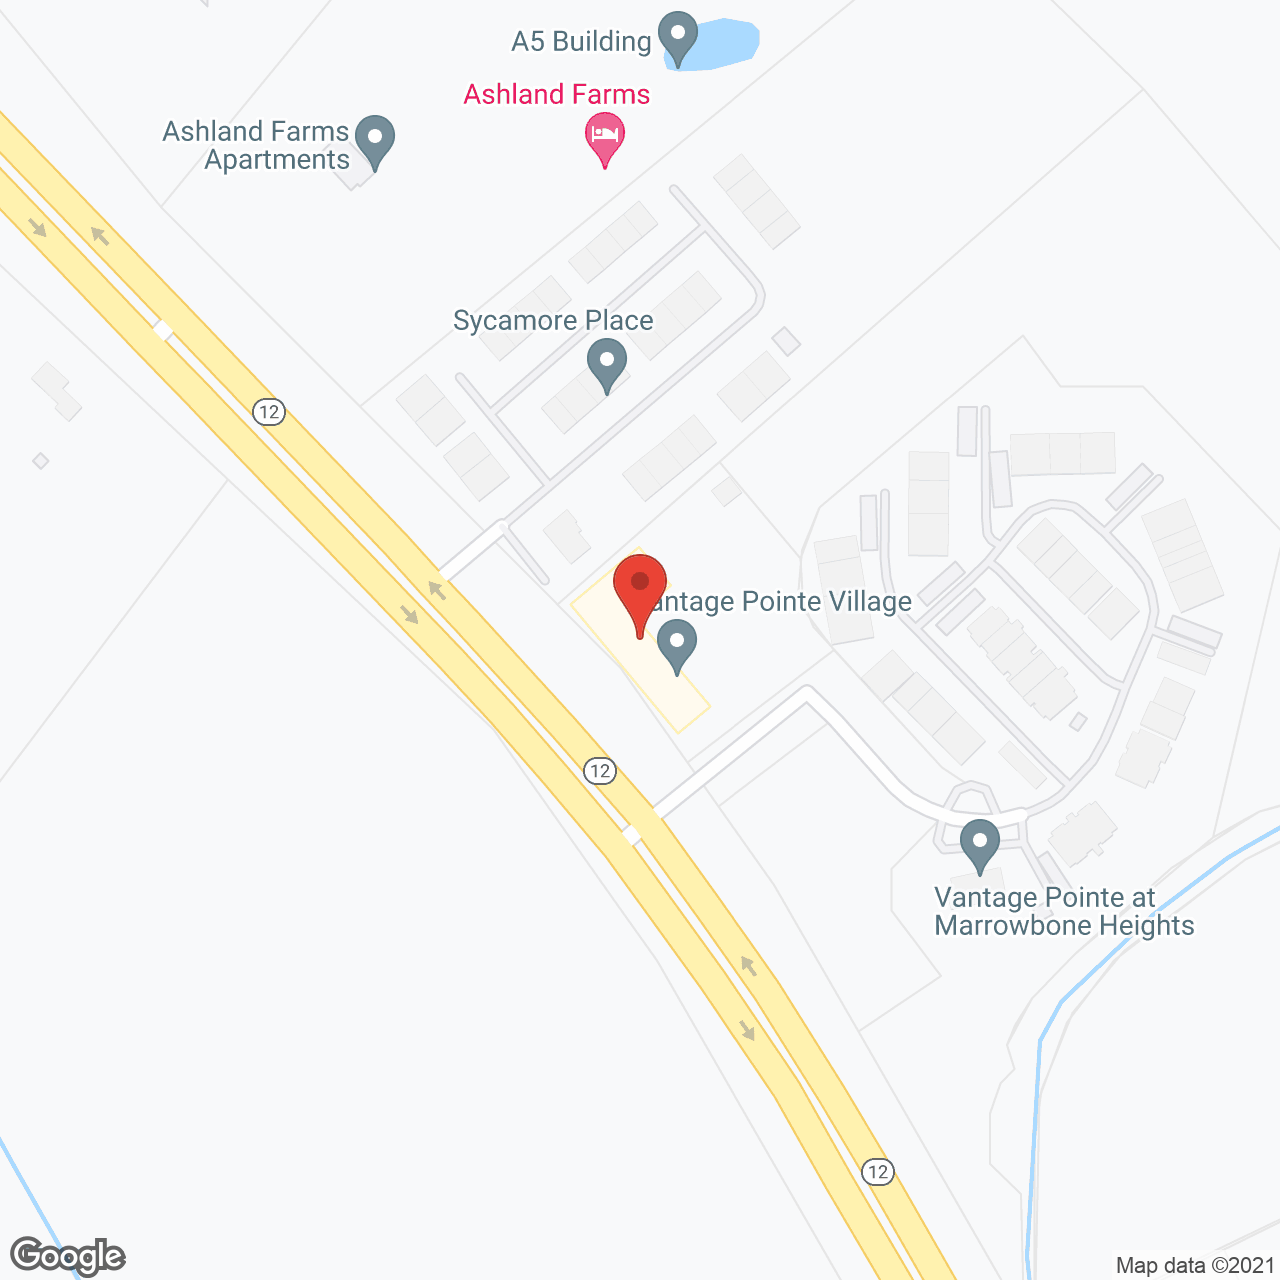 Vantage Pointe Village in google map